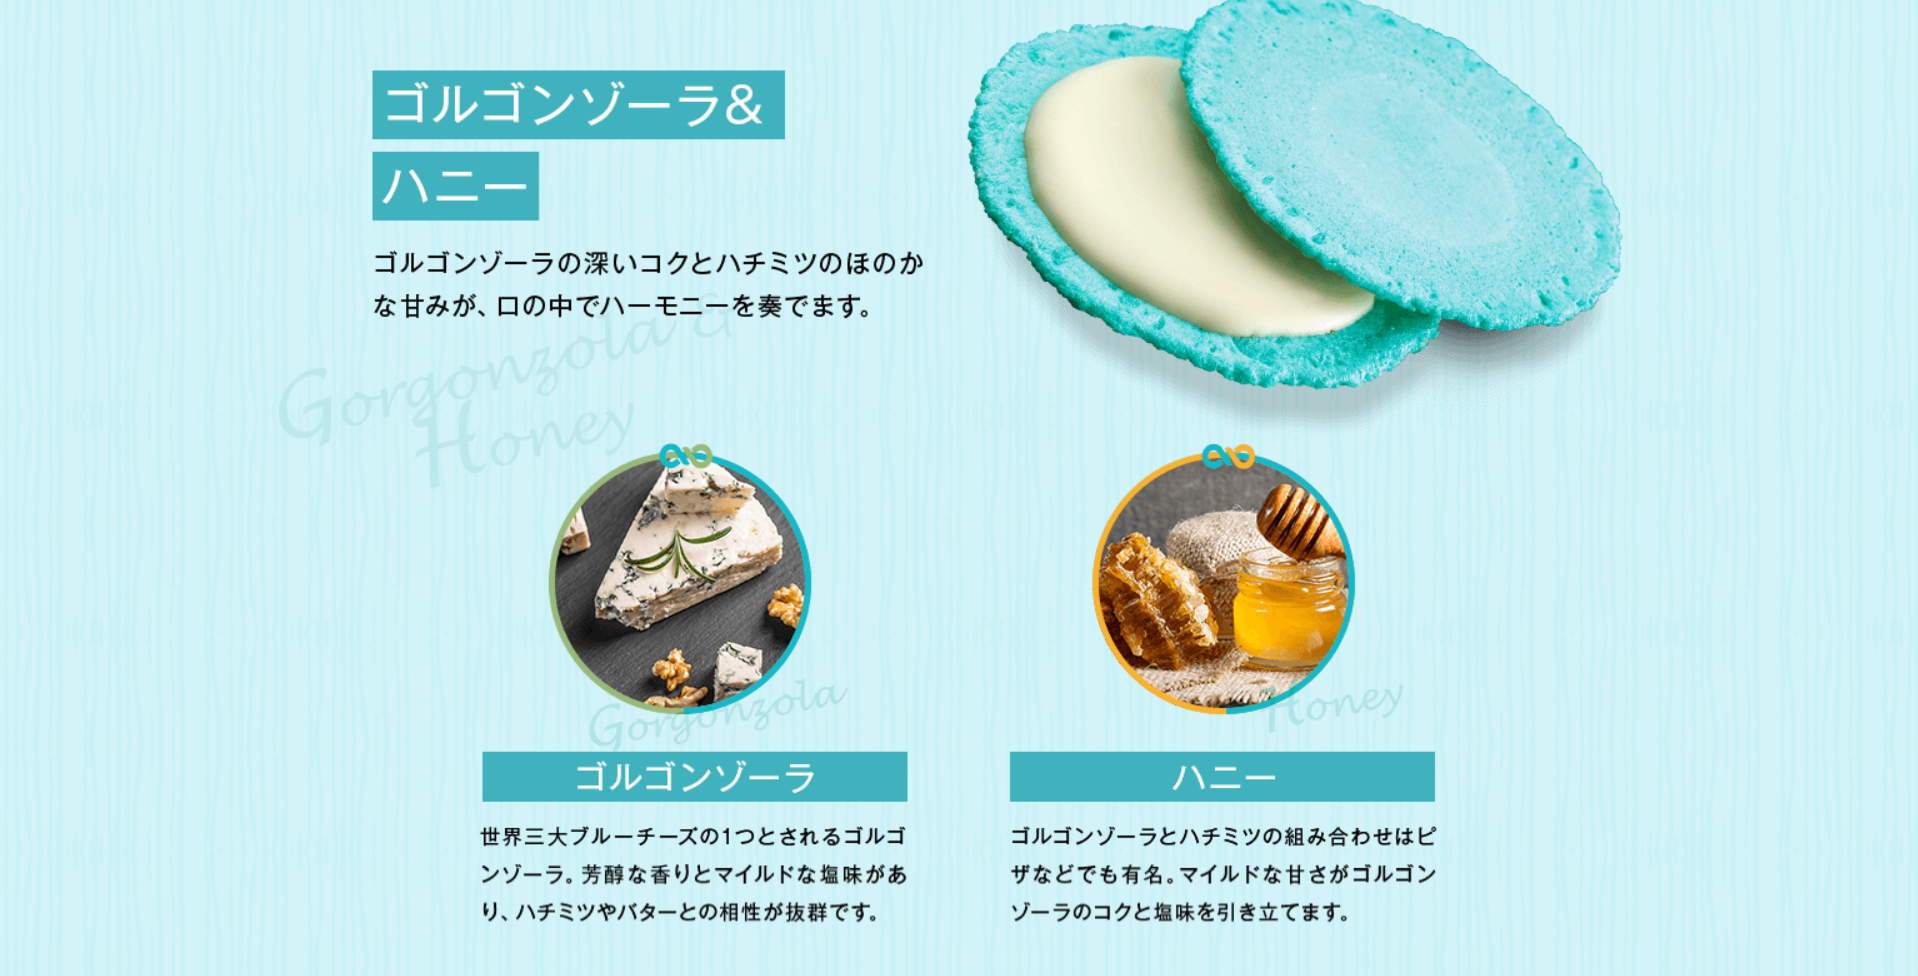 クアトロえびチーズ-えびとチーズの専門店SHIMAHIDE-2